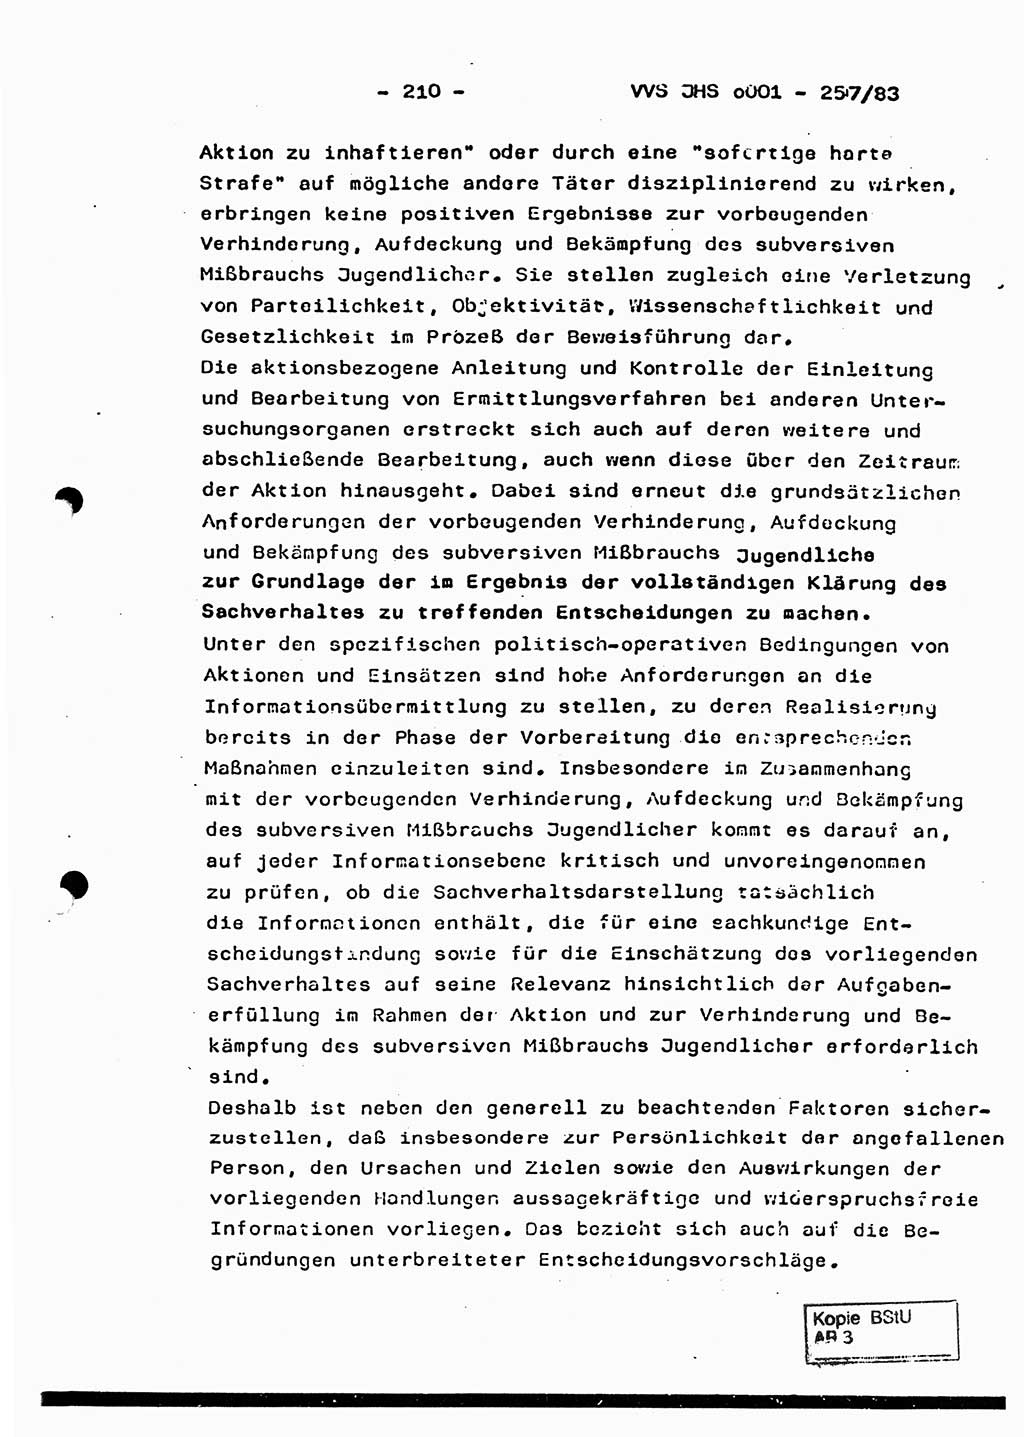 Dissertation, Oberst Helmut Lubas (BV Mdg.), Oberstleutnant Manfred Eschberger (HA IX), Oberleutnant Hans-Jürgen Ludwig (JHS), Ministerium für Staatssicherheit (MfS) [Deutsche Demokratische Republik (DDR)], Juristische Hochschule (JHS), Vertrauliche Verschlußsache (VVS) o001-257/83, Potsdam 1983, Seite 210 (Diss. MfS DDR JHS VVS o001-257/83 1983, S. 210)